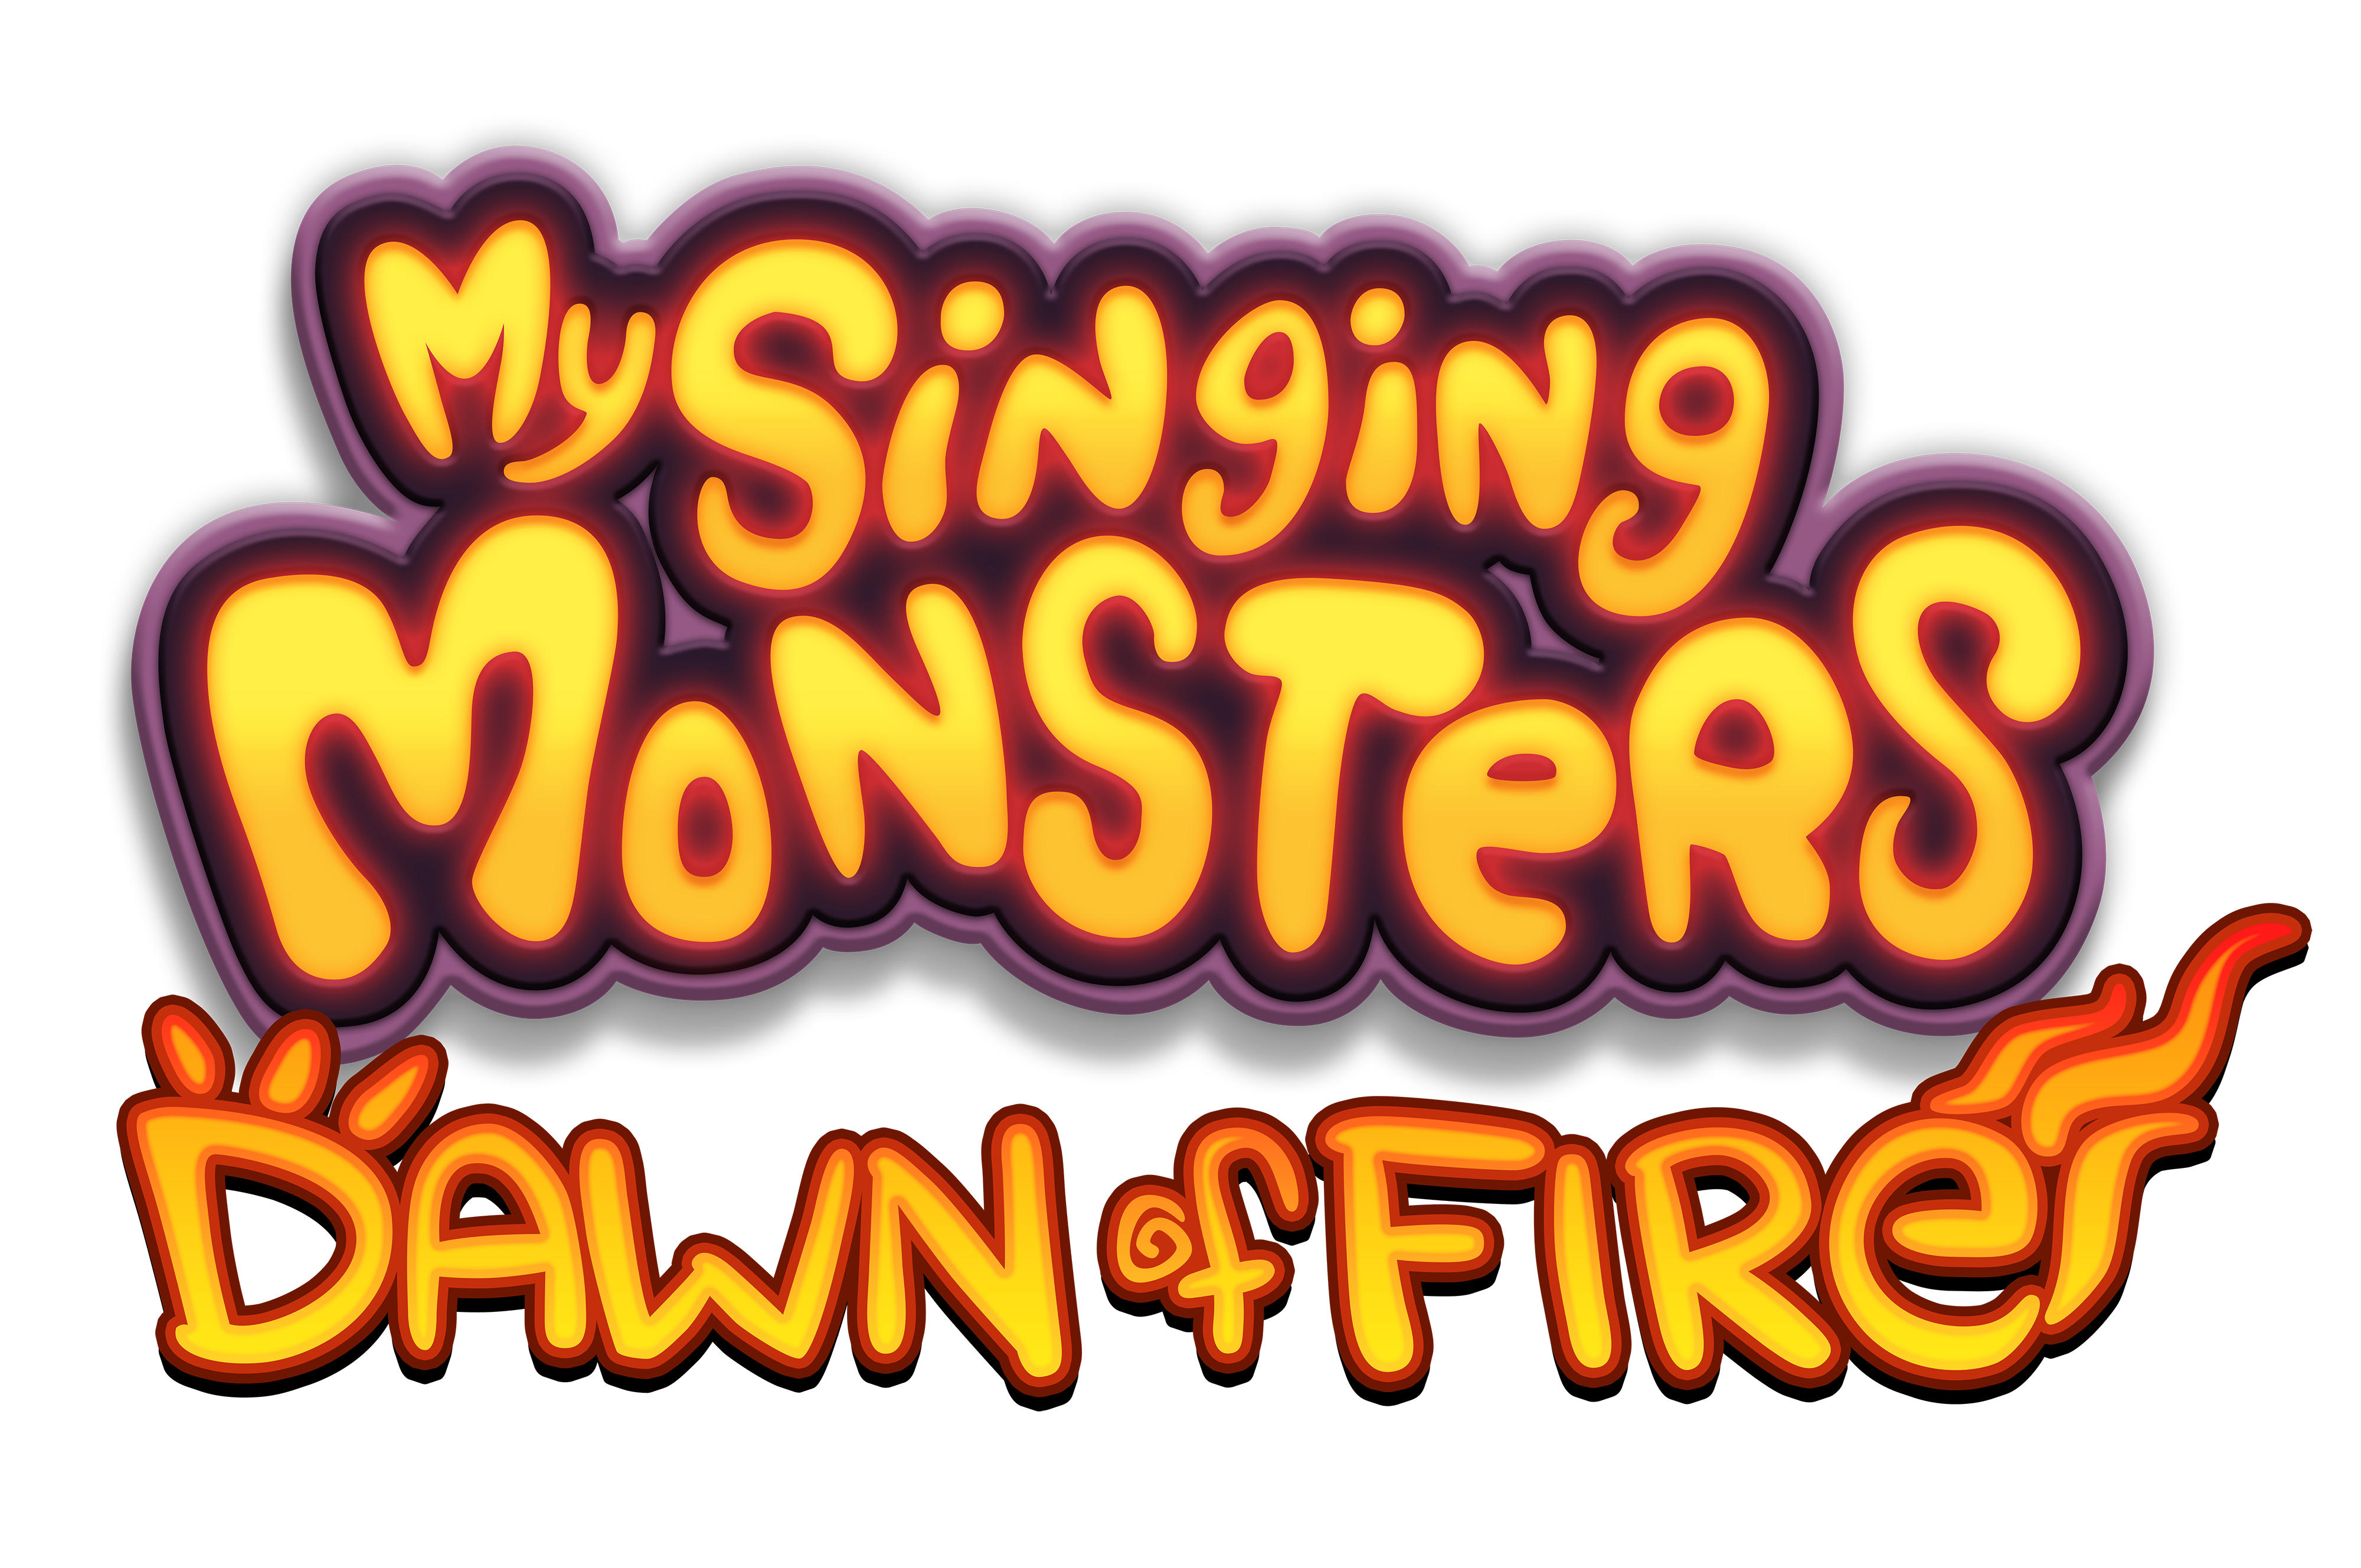 Me sing monster. My singing Monsters Dawn of Fire лого. My singing Monsters Dawn of Fire логотип. Поющие монстры надпись. Мои Поющие монстры надпись.